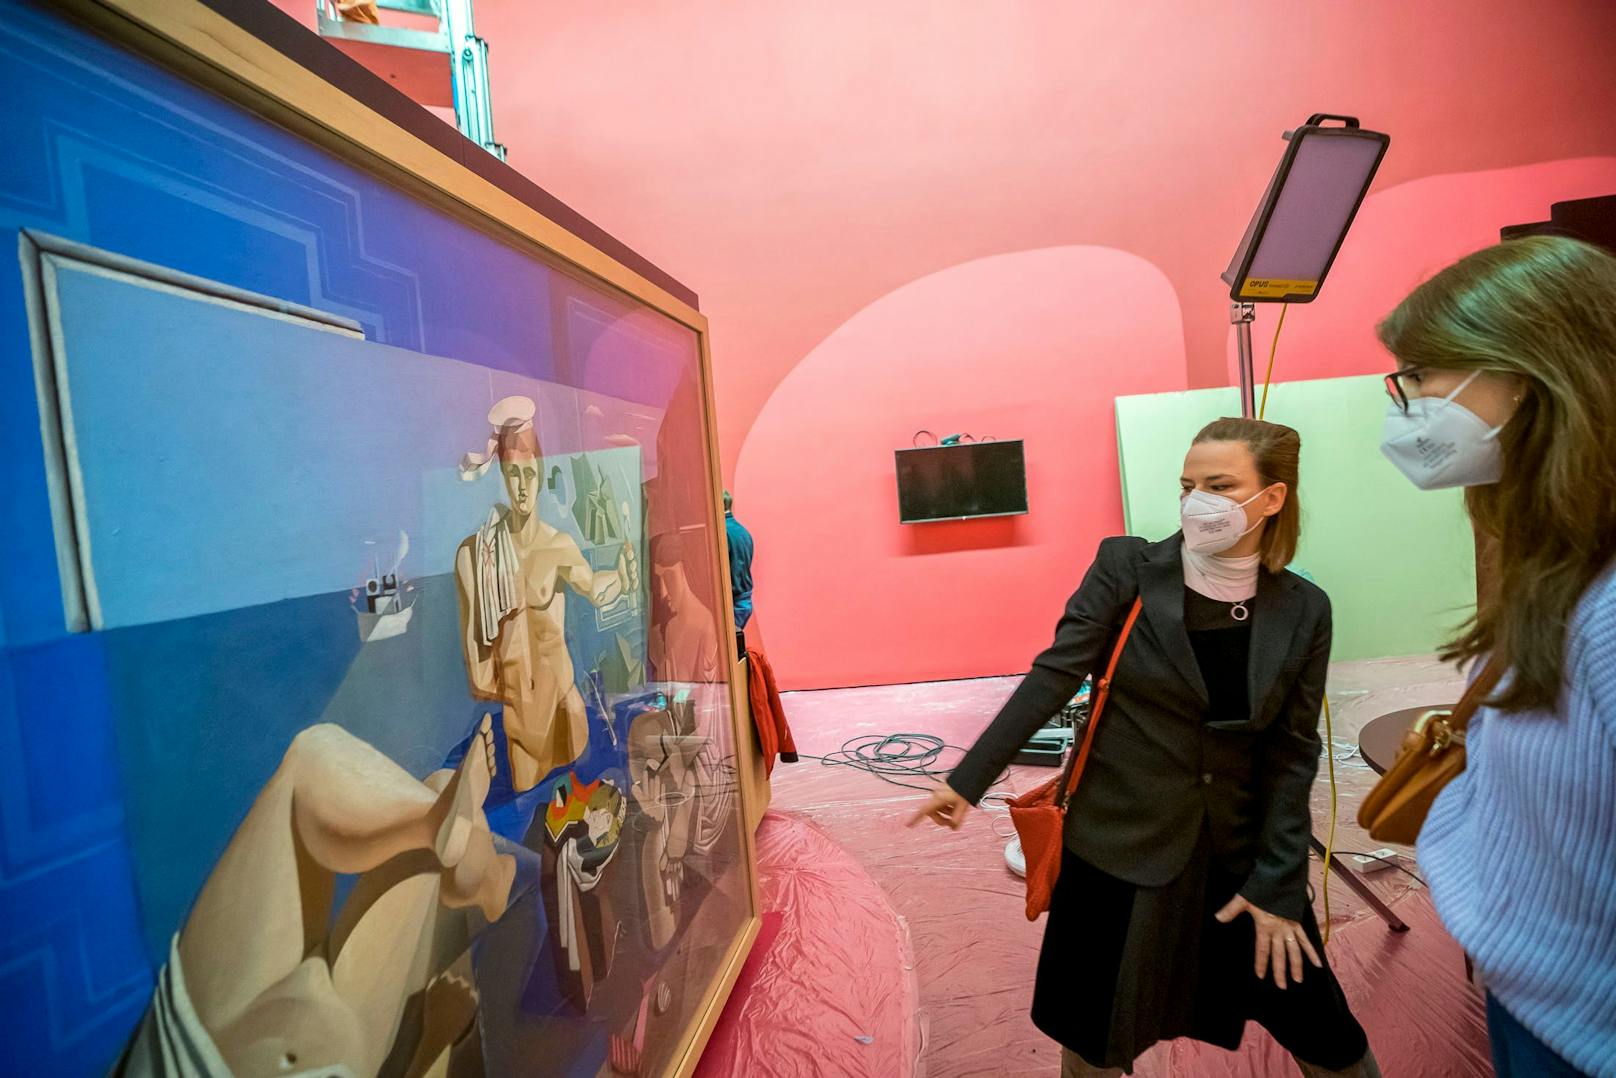 Für "SzeneBackstage" besuchte <em>"Heute"</em> den Ausstellungsaufbau von "Dalí – Freud. Eine Obsession".